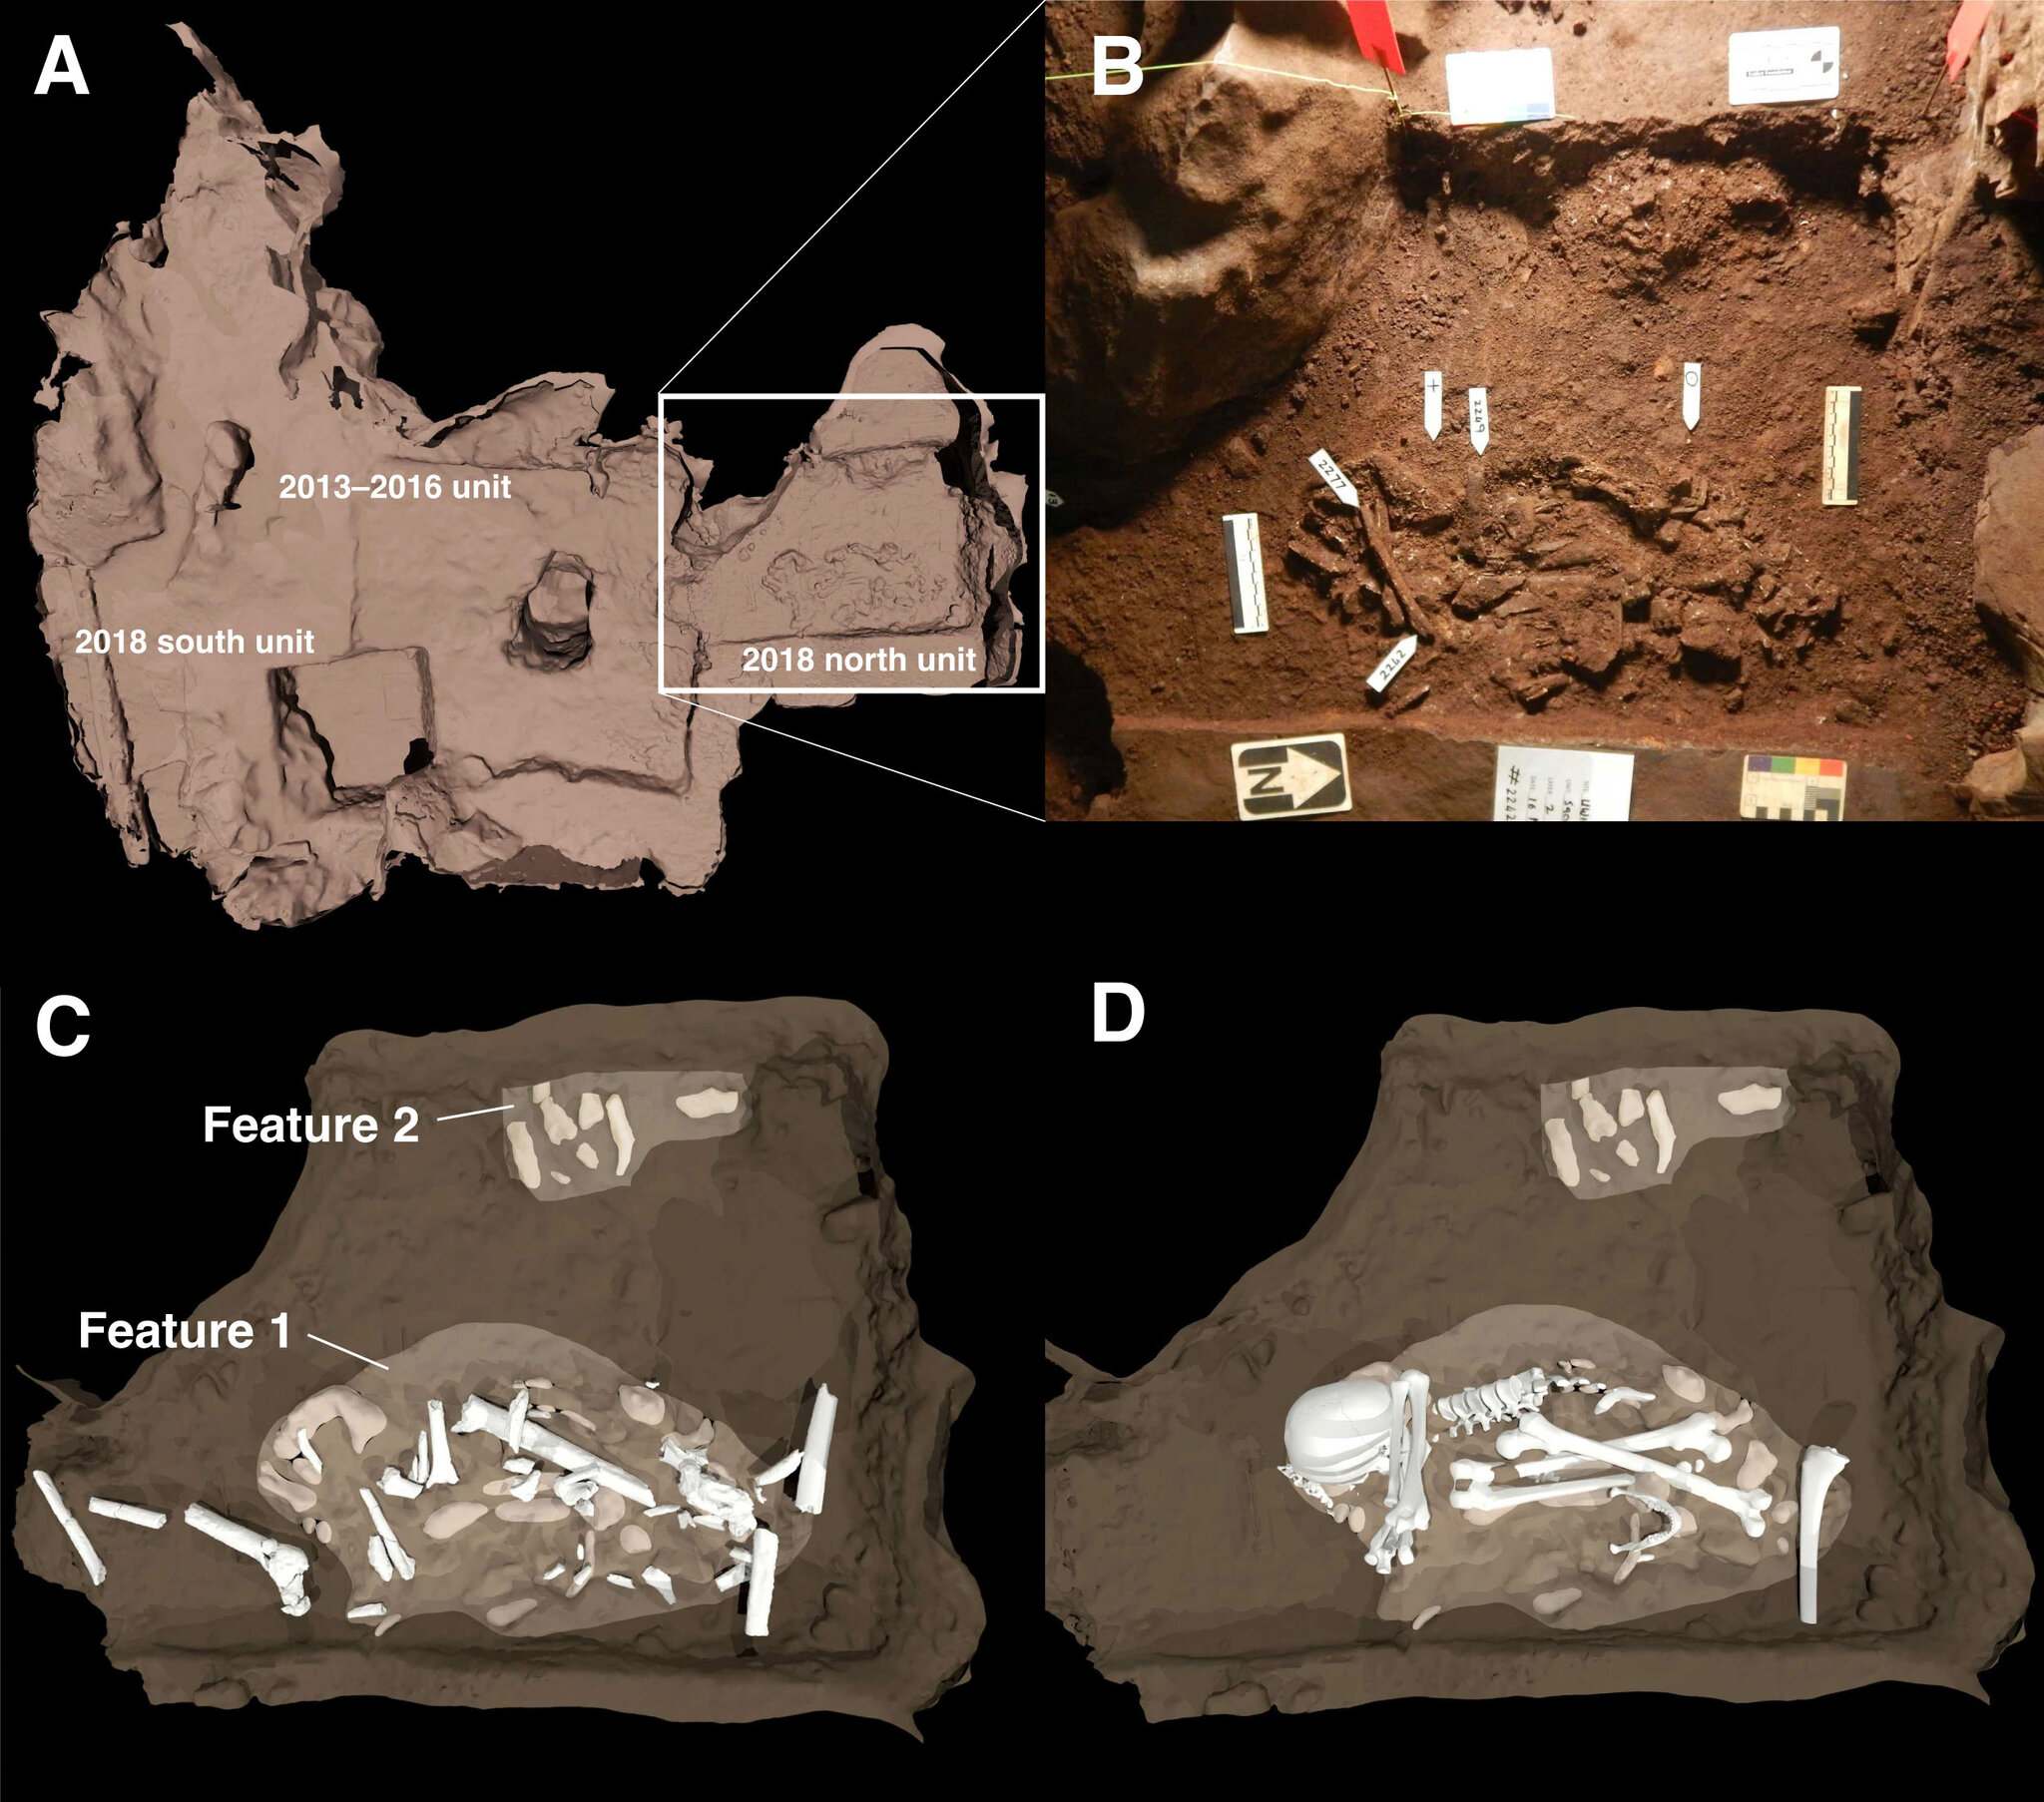 Een schema van de twee grafkenmerken die werden ontdekt in de Dinaledi-kamer van de Rising Star-grot. (A) De positie van begrafenissen ten opzichte van opgravingen in 2013–2016 wordt weergegeven per vierkant gebied. (B) Dit is een foto van de belangrijkste begrafeniskenmerken. Kenmerk 1 is het lichaam van een volwassen exemplaar van de Homo naledi. Kenmerk 2 toont ten minste één jeugdig lichaam aan de rand van de begraafplaats. (C) en (D) zijn afbeeldingen die laten zien hoe de botten in de graven waren geplaatst.